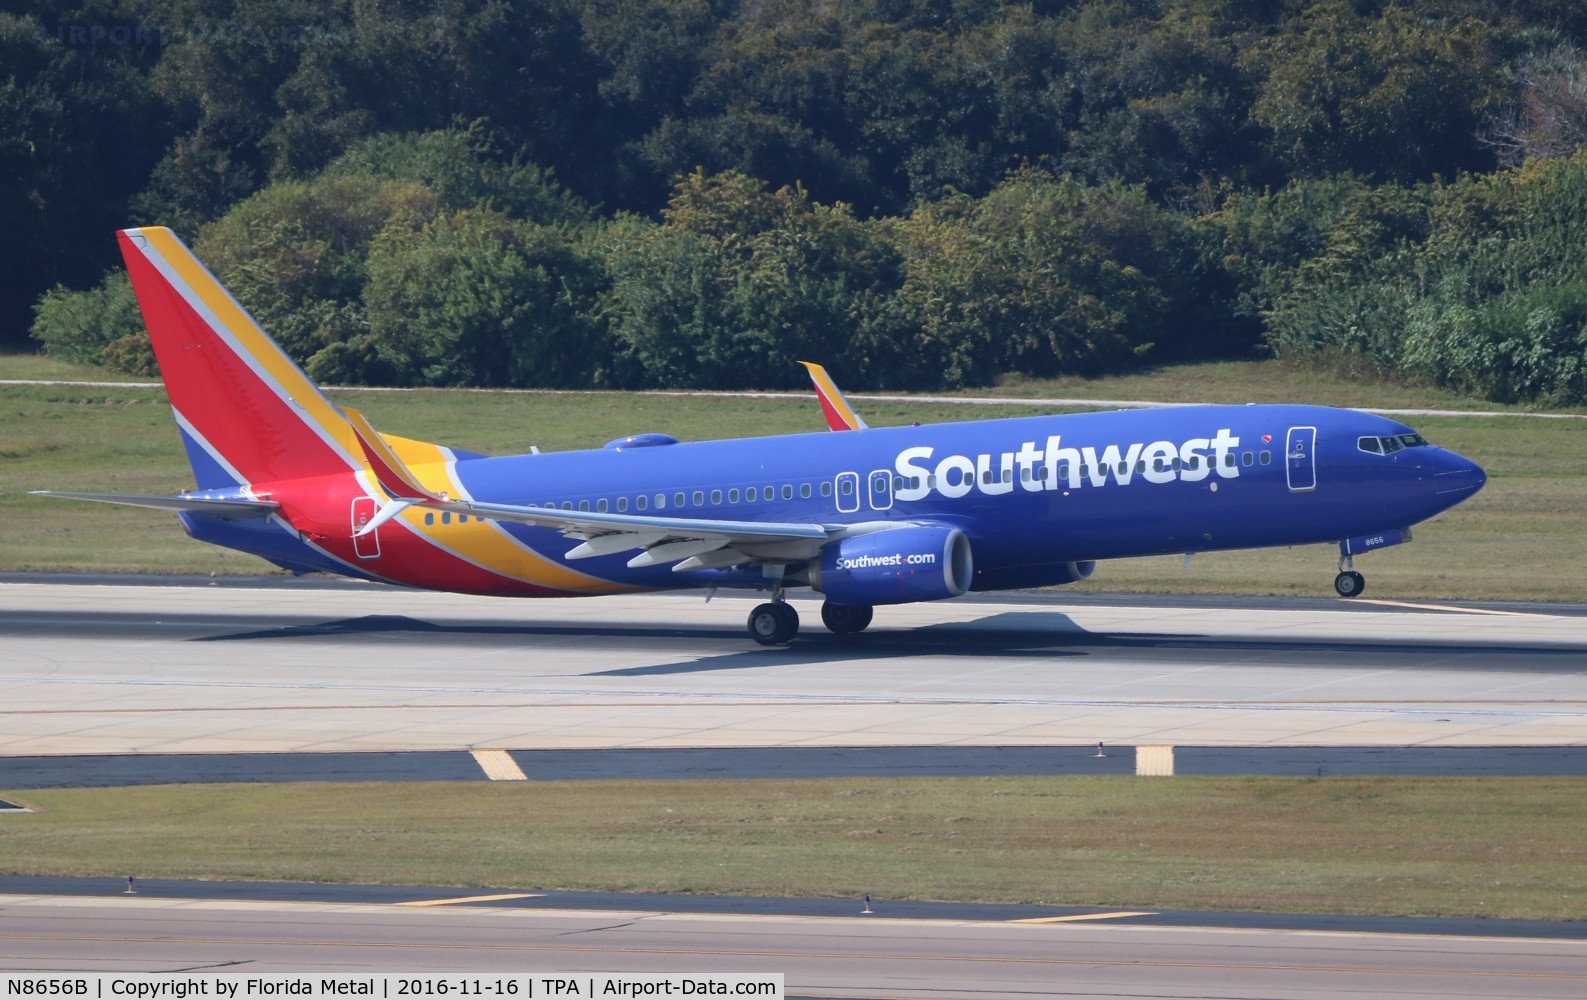 N8656B, 2014 Boeing 737-8H4 C/N 42530, Southwest